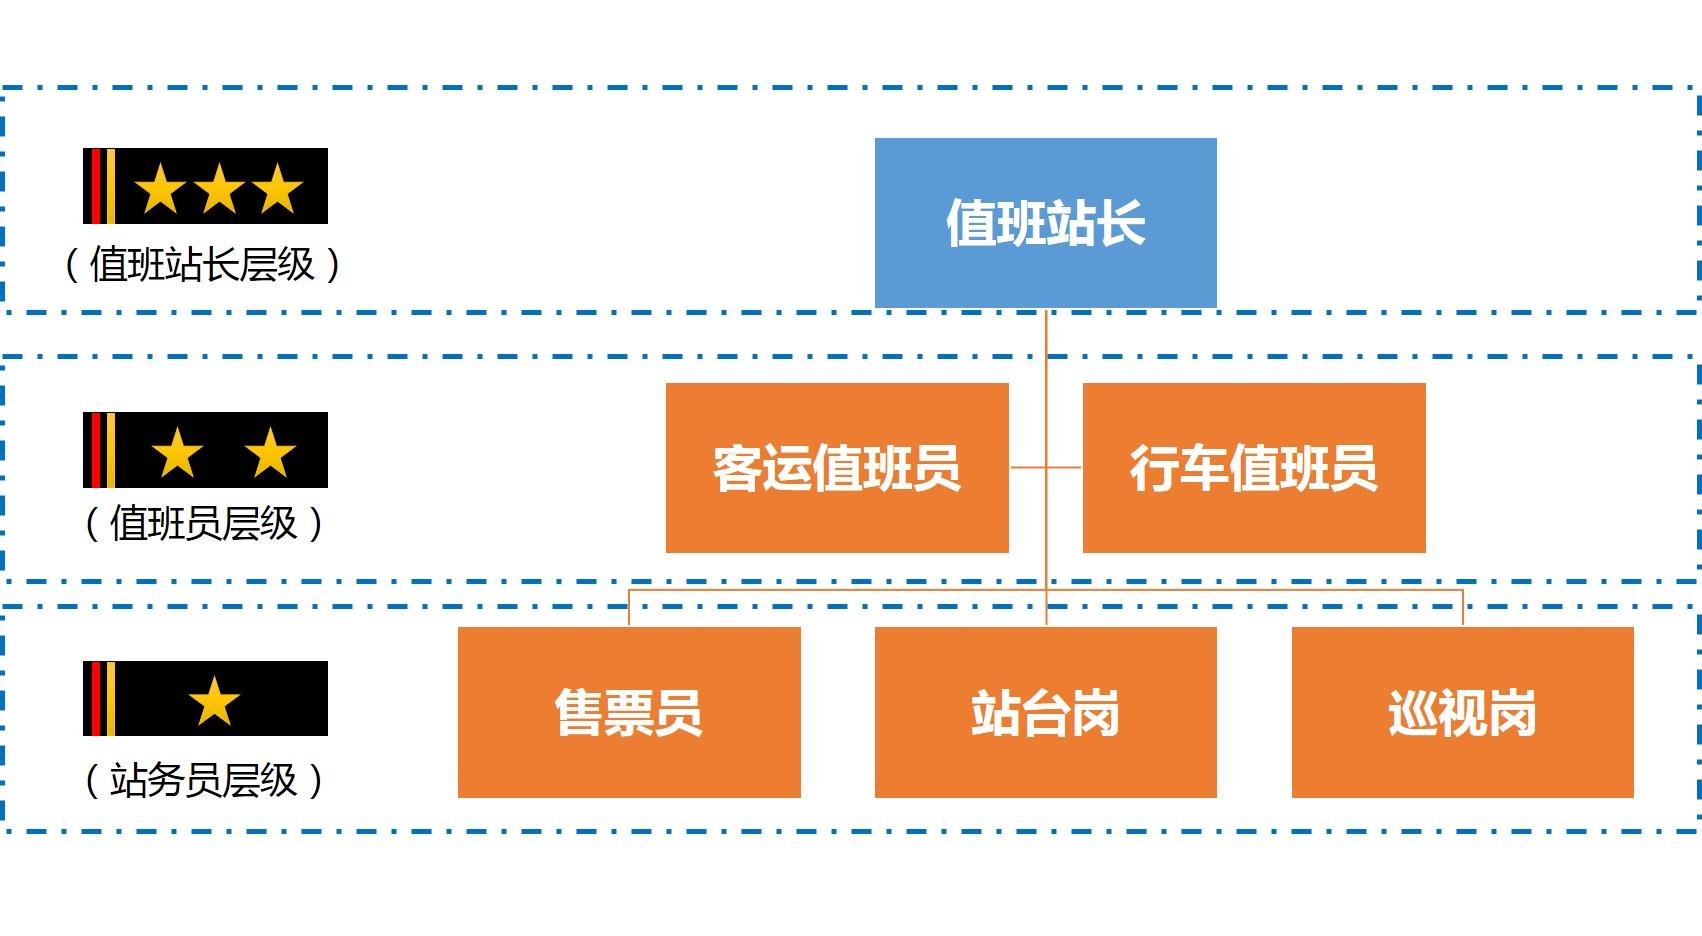 广州铁路局指挥部，铁三院，广州地铁设计院选择哪个工资待遇，发展前景，工作内容，求各位前辈给我一些建议？ - 知乎